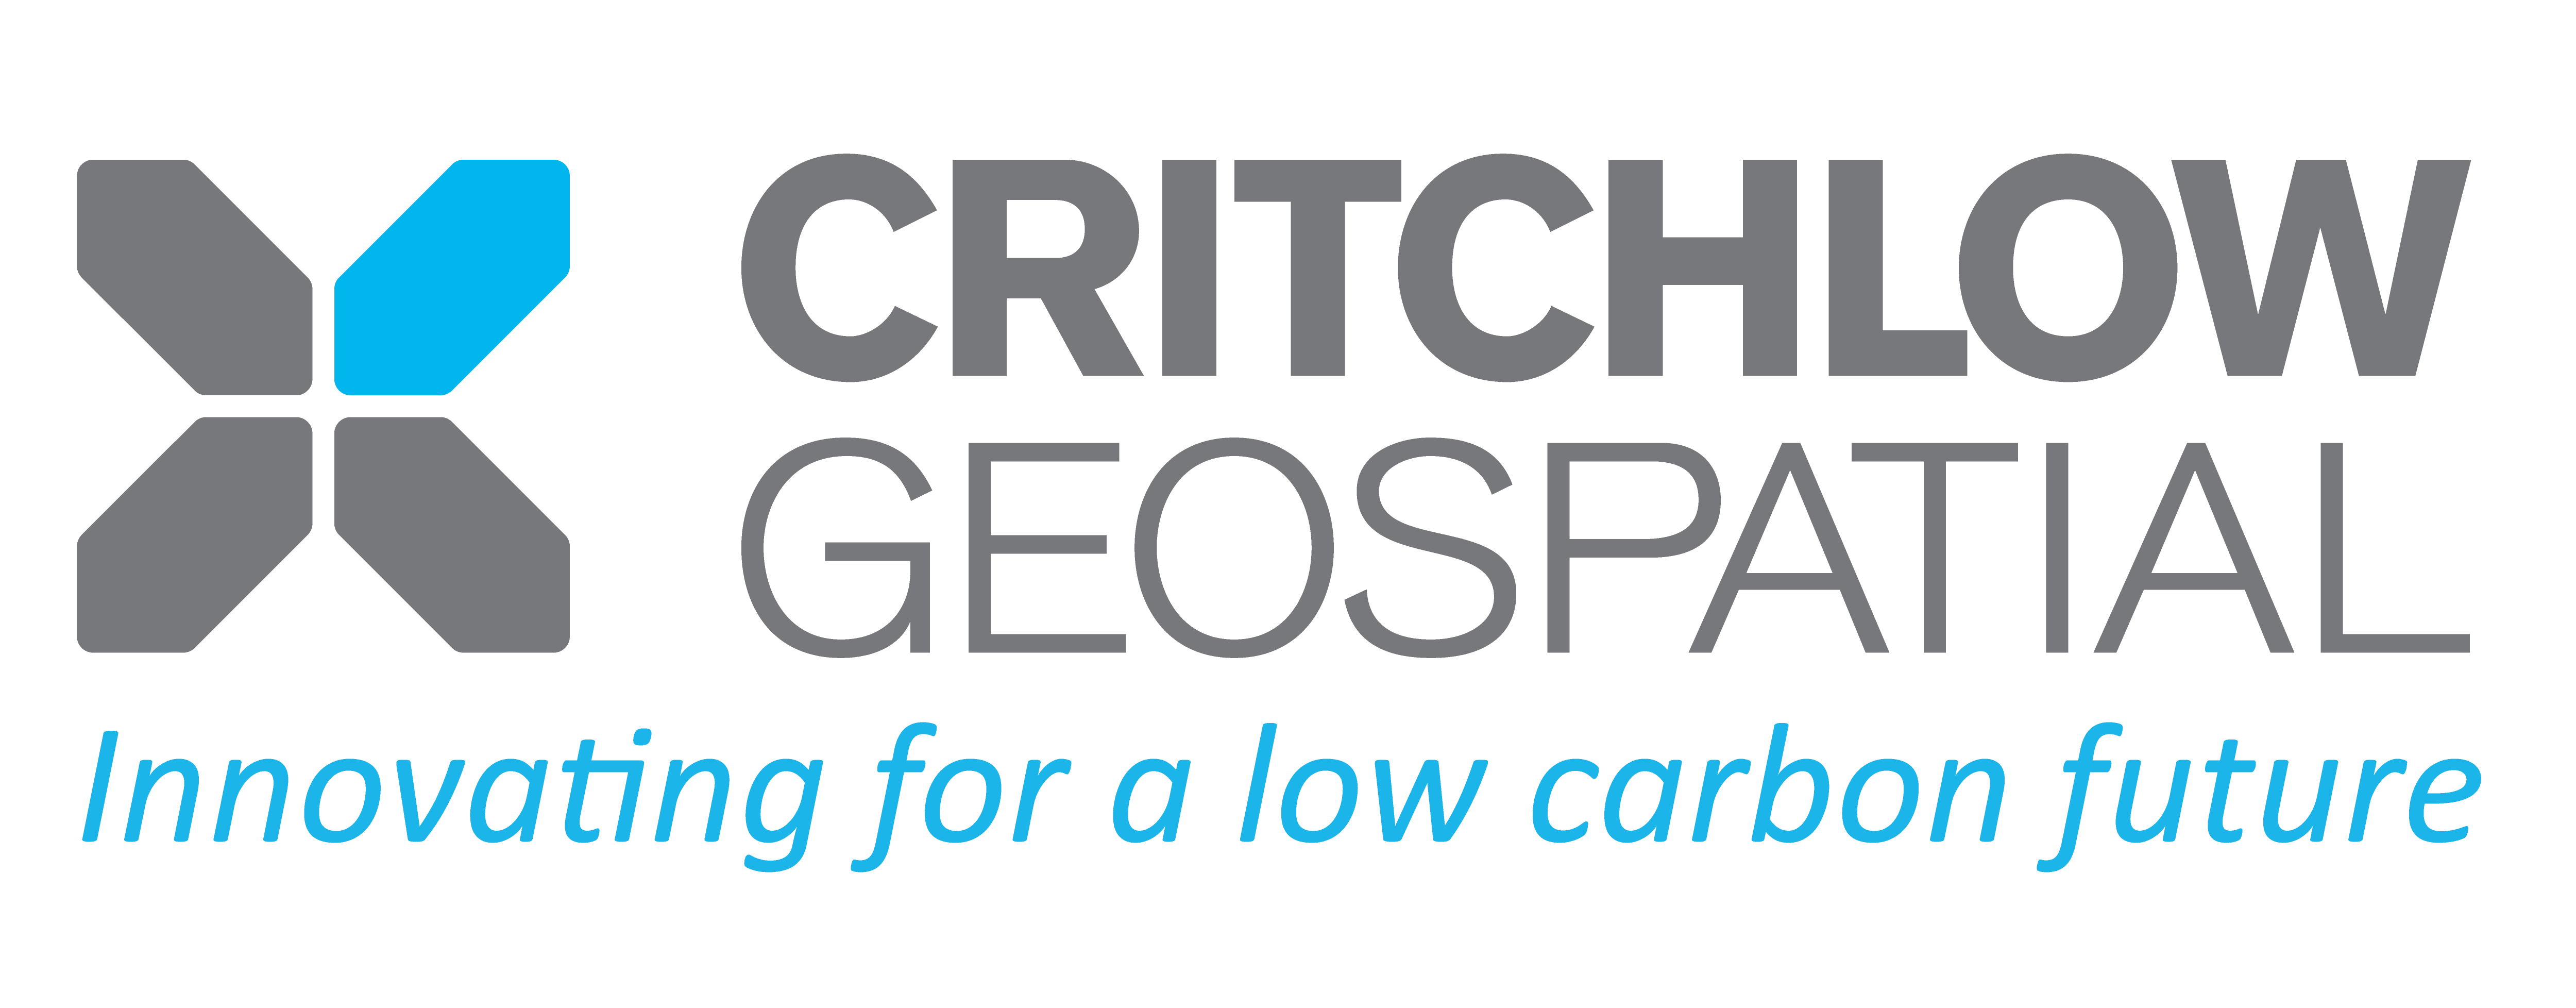 Critchlow Geospatial